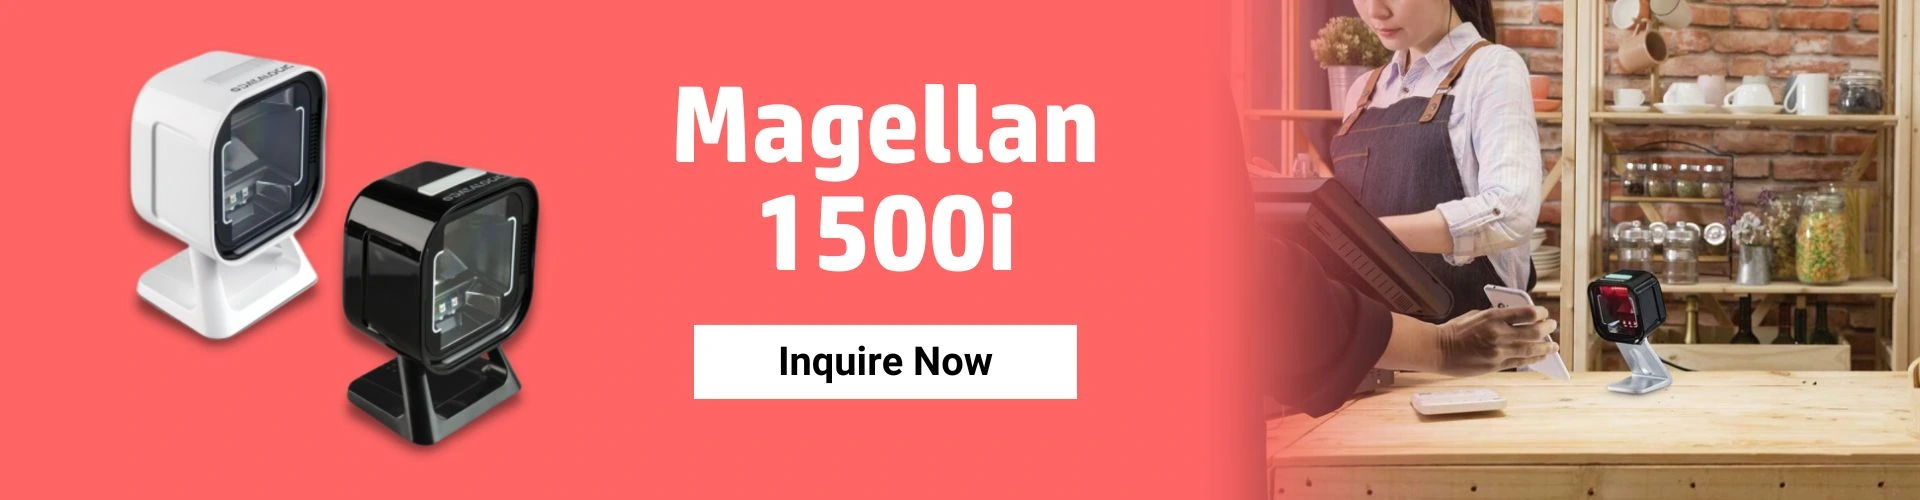 magellan-1500i